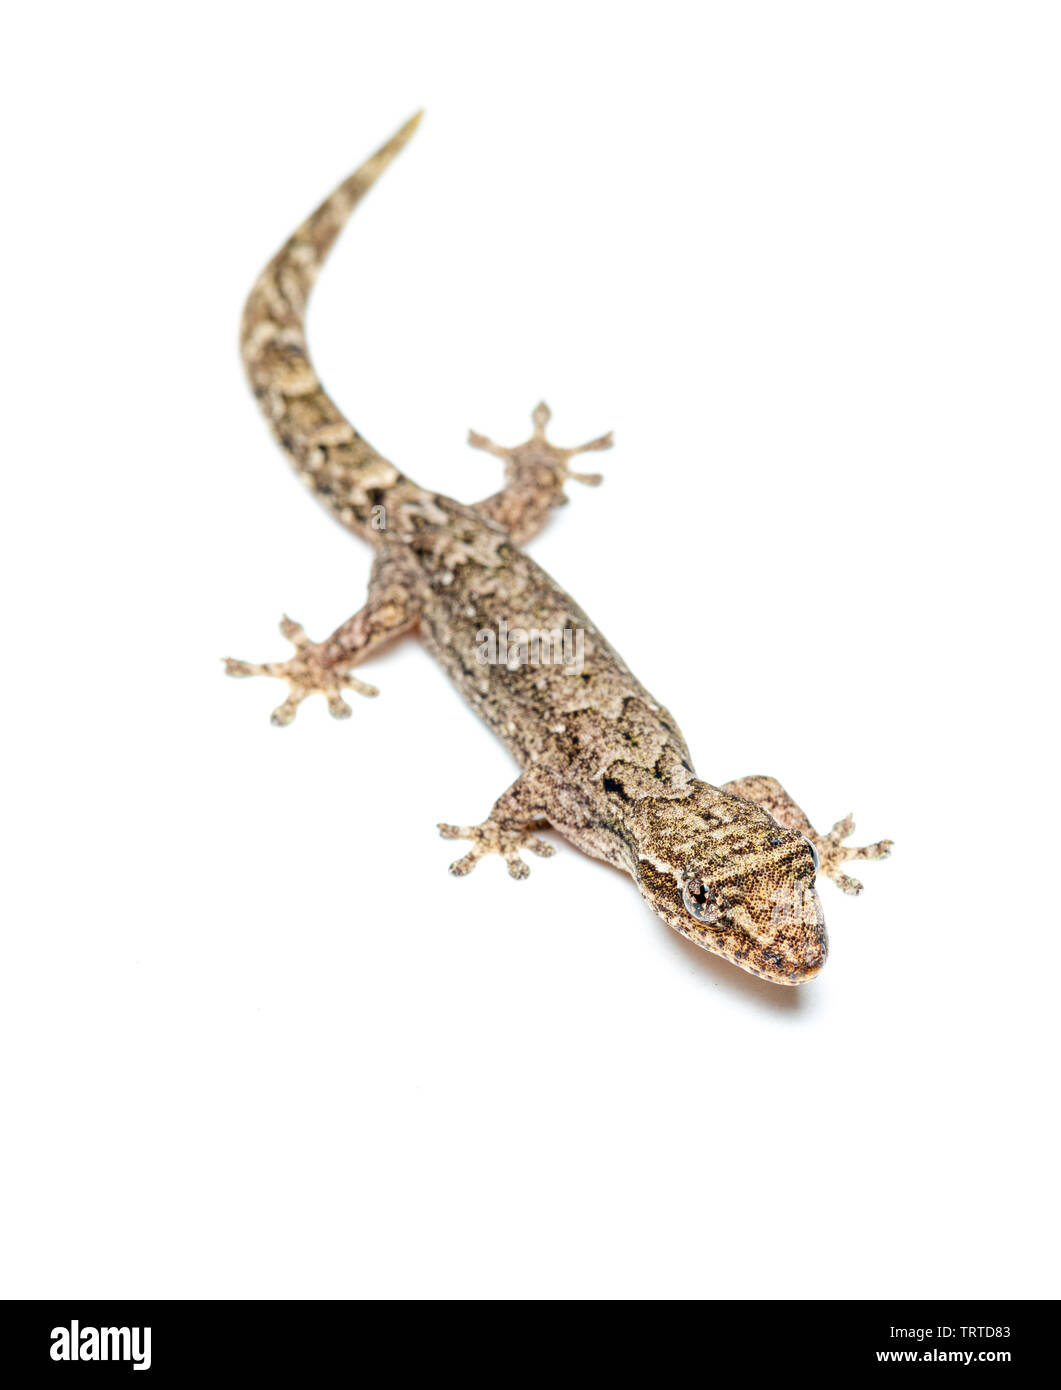 Lepidodactylus lugubris, die Trauer gecko, Skalen angezeigt und getarnt Muster Stockfoto